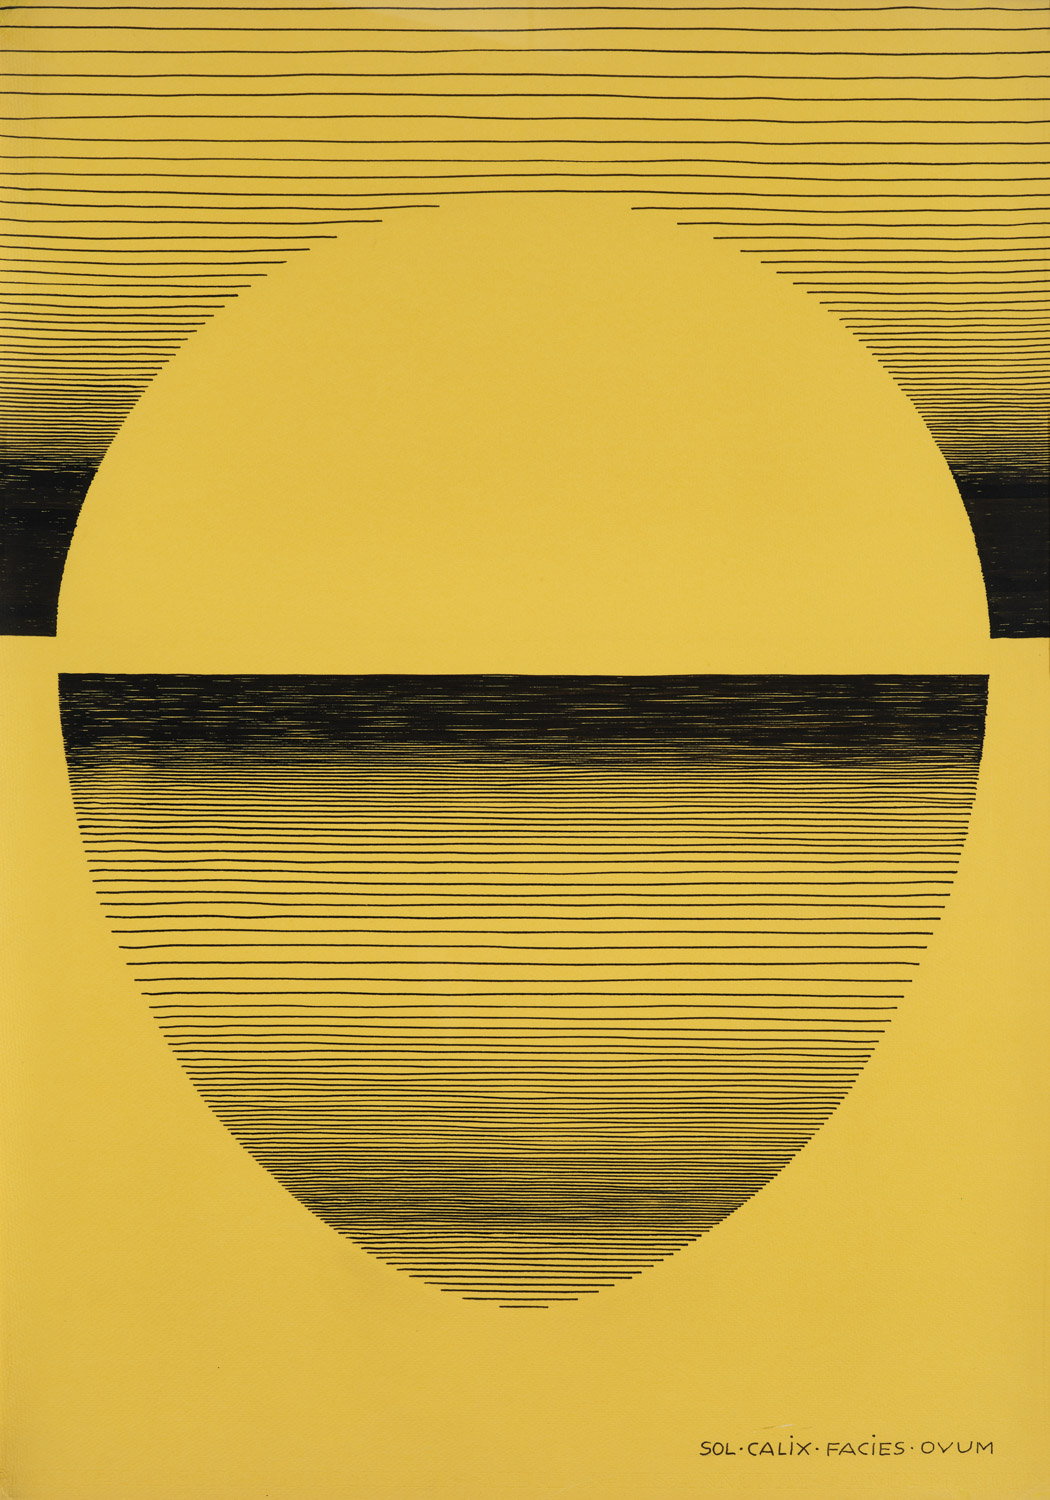 Sol calix, facies ovum I by Michel Seuphor